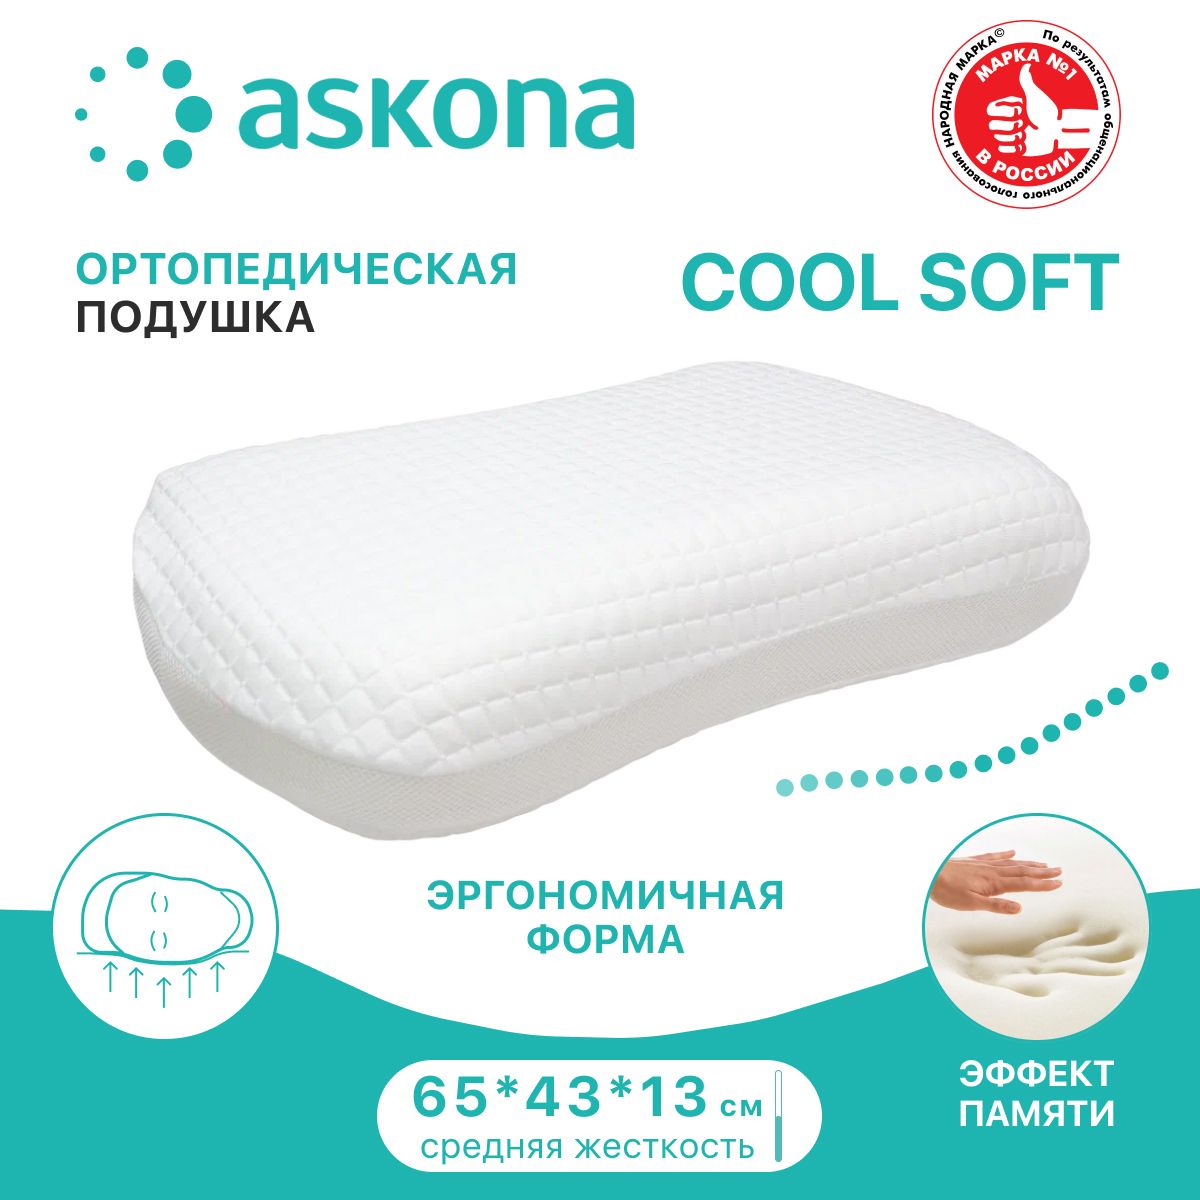 Подушка аскона память. Cool Soft подушка Аскона. Анатомическая подушка с эффектом памяти Аскона. Подушка Аскона ортопедическая с эффектом памяти. Aura подушка Аскона.